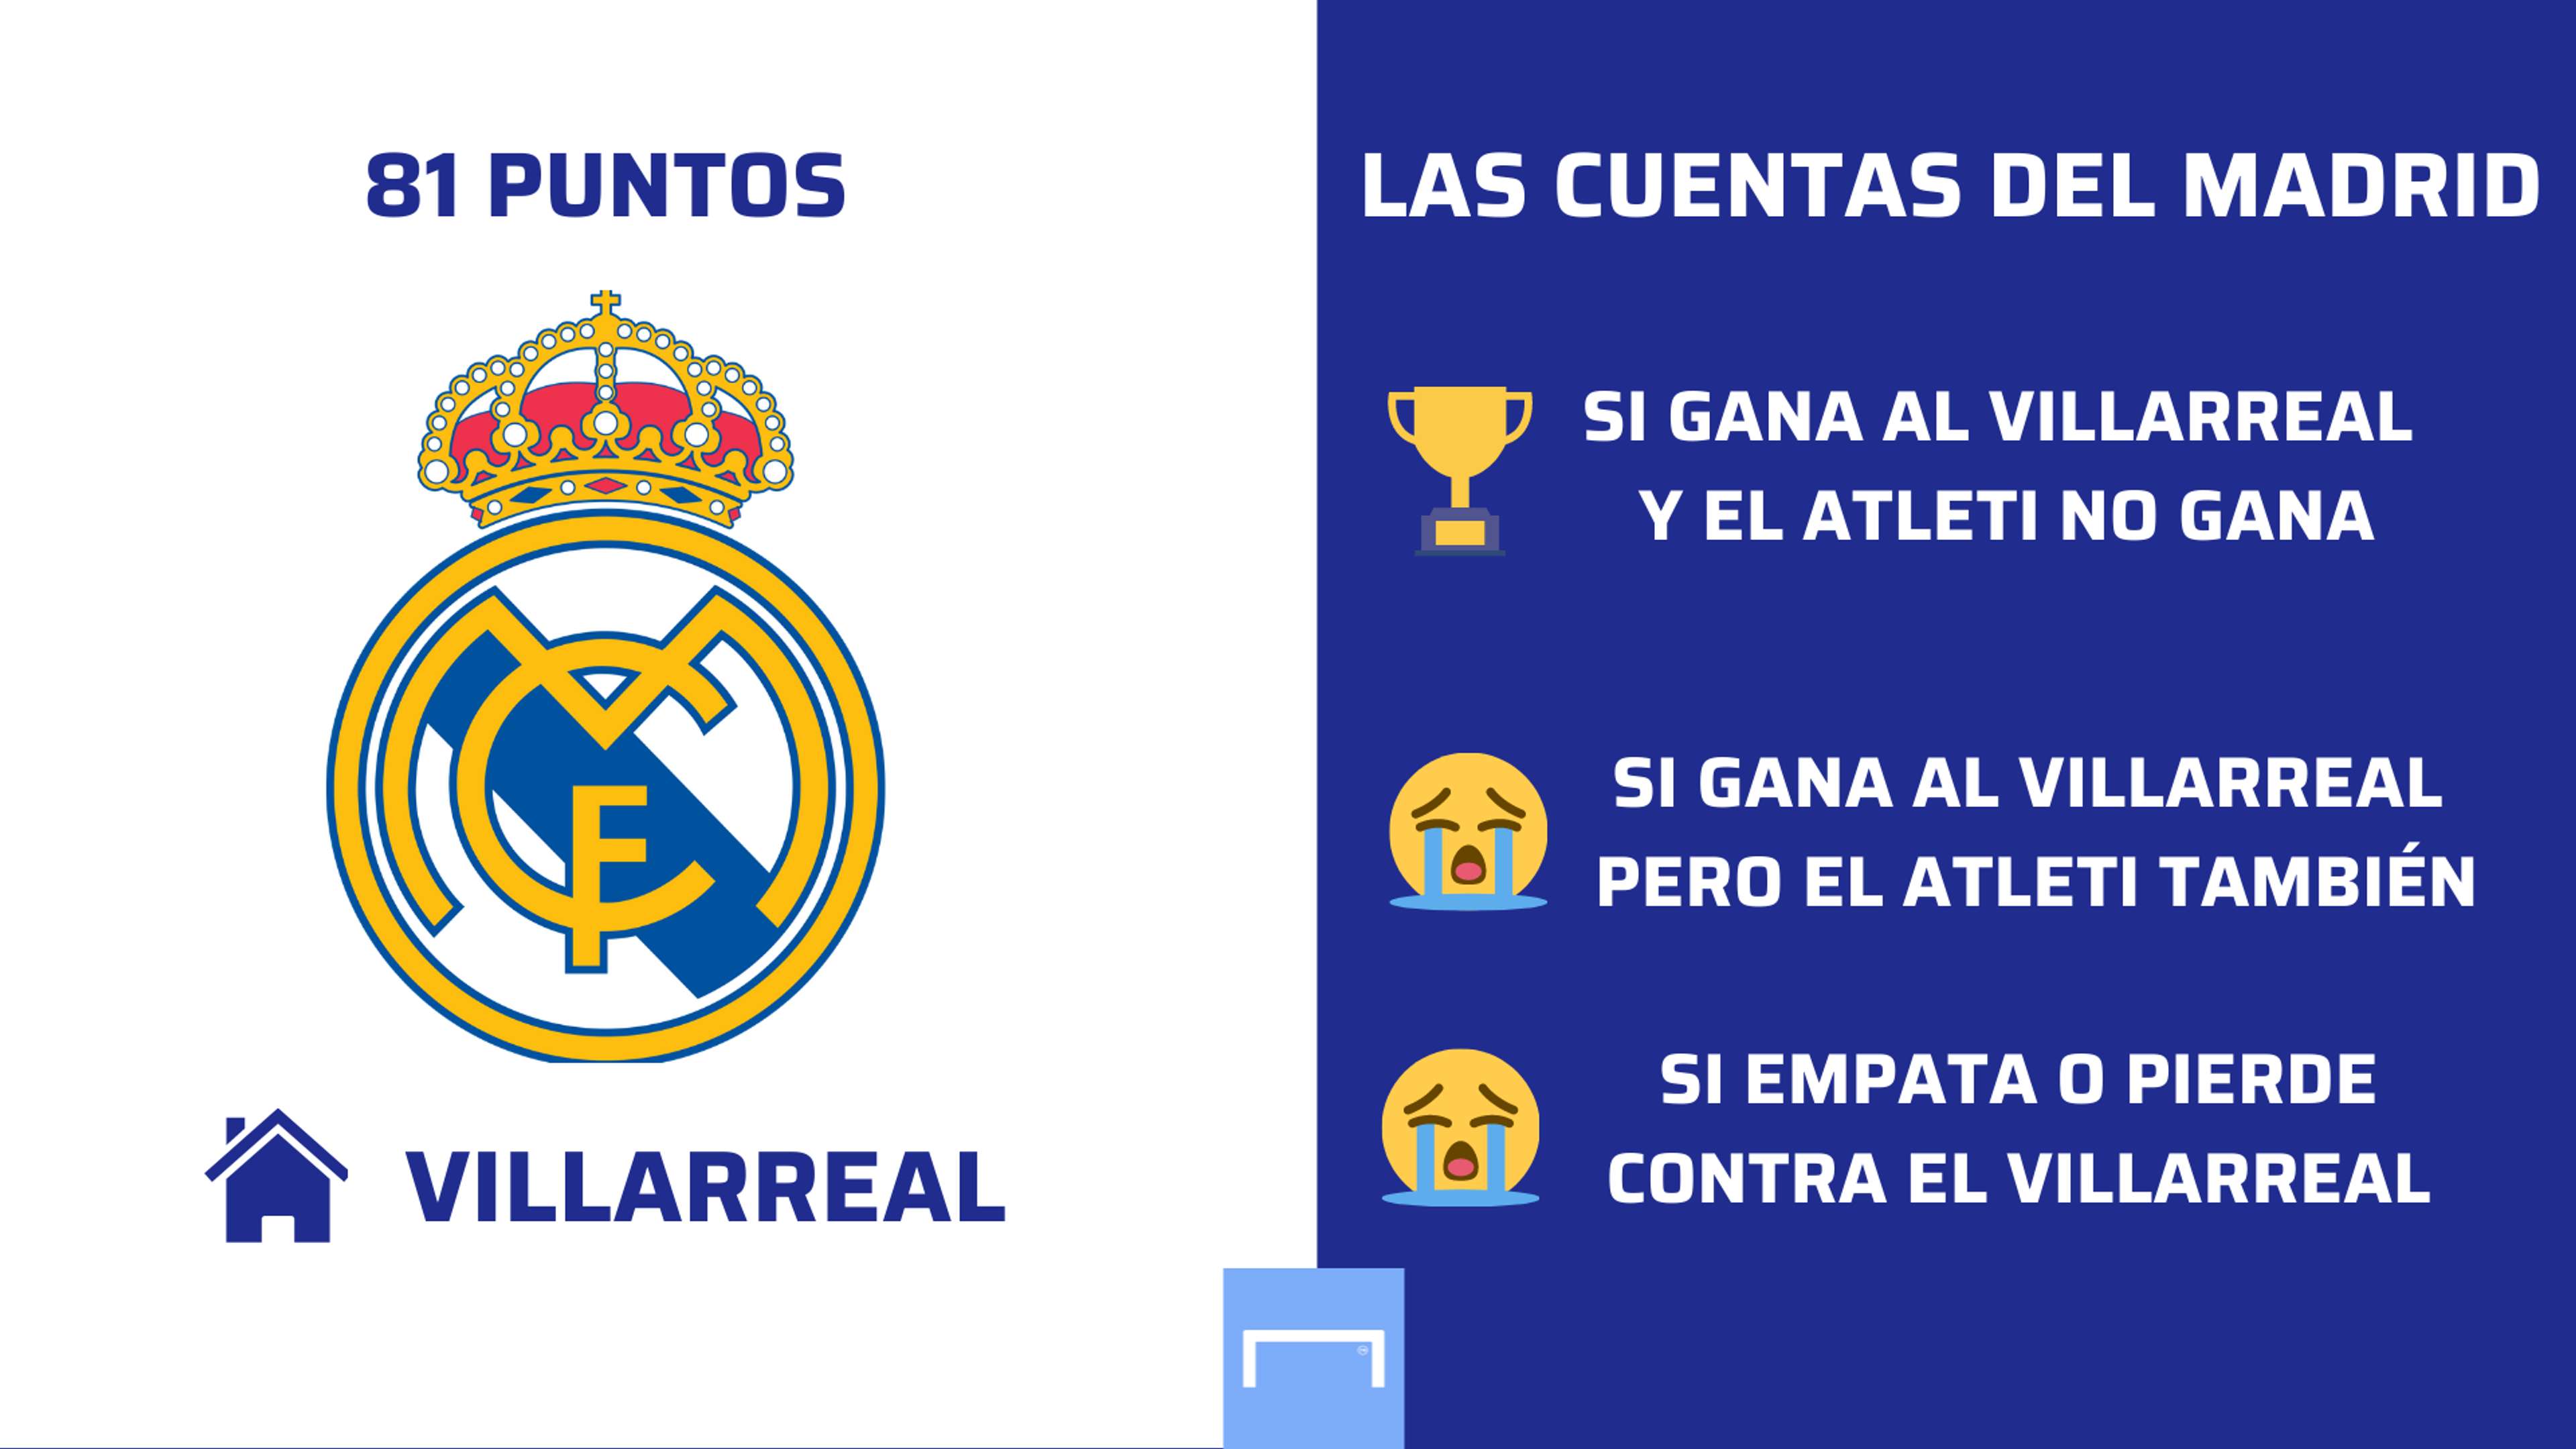 Las cuentas del Real Madrid